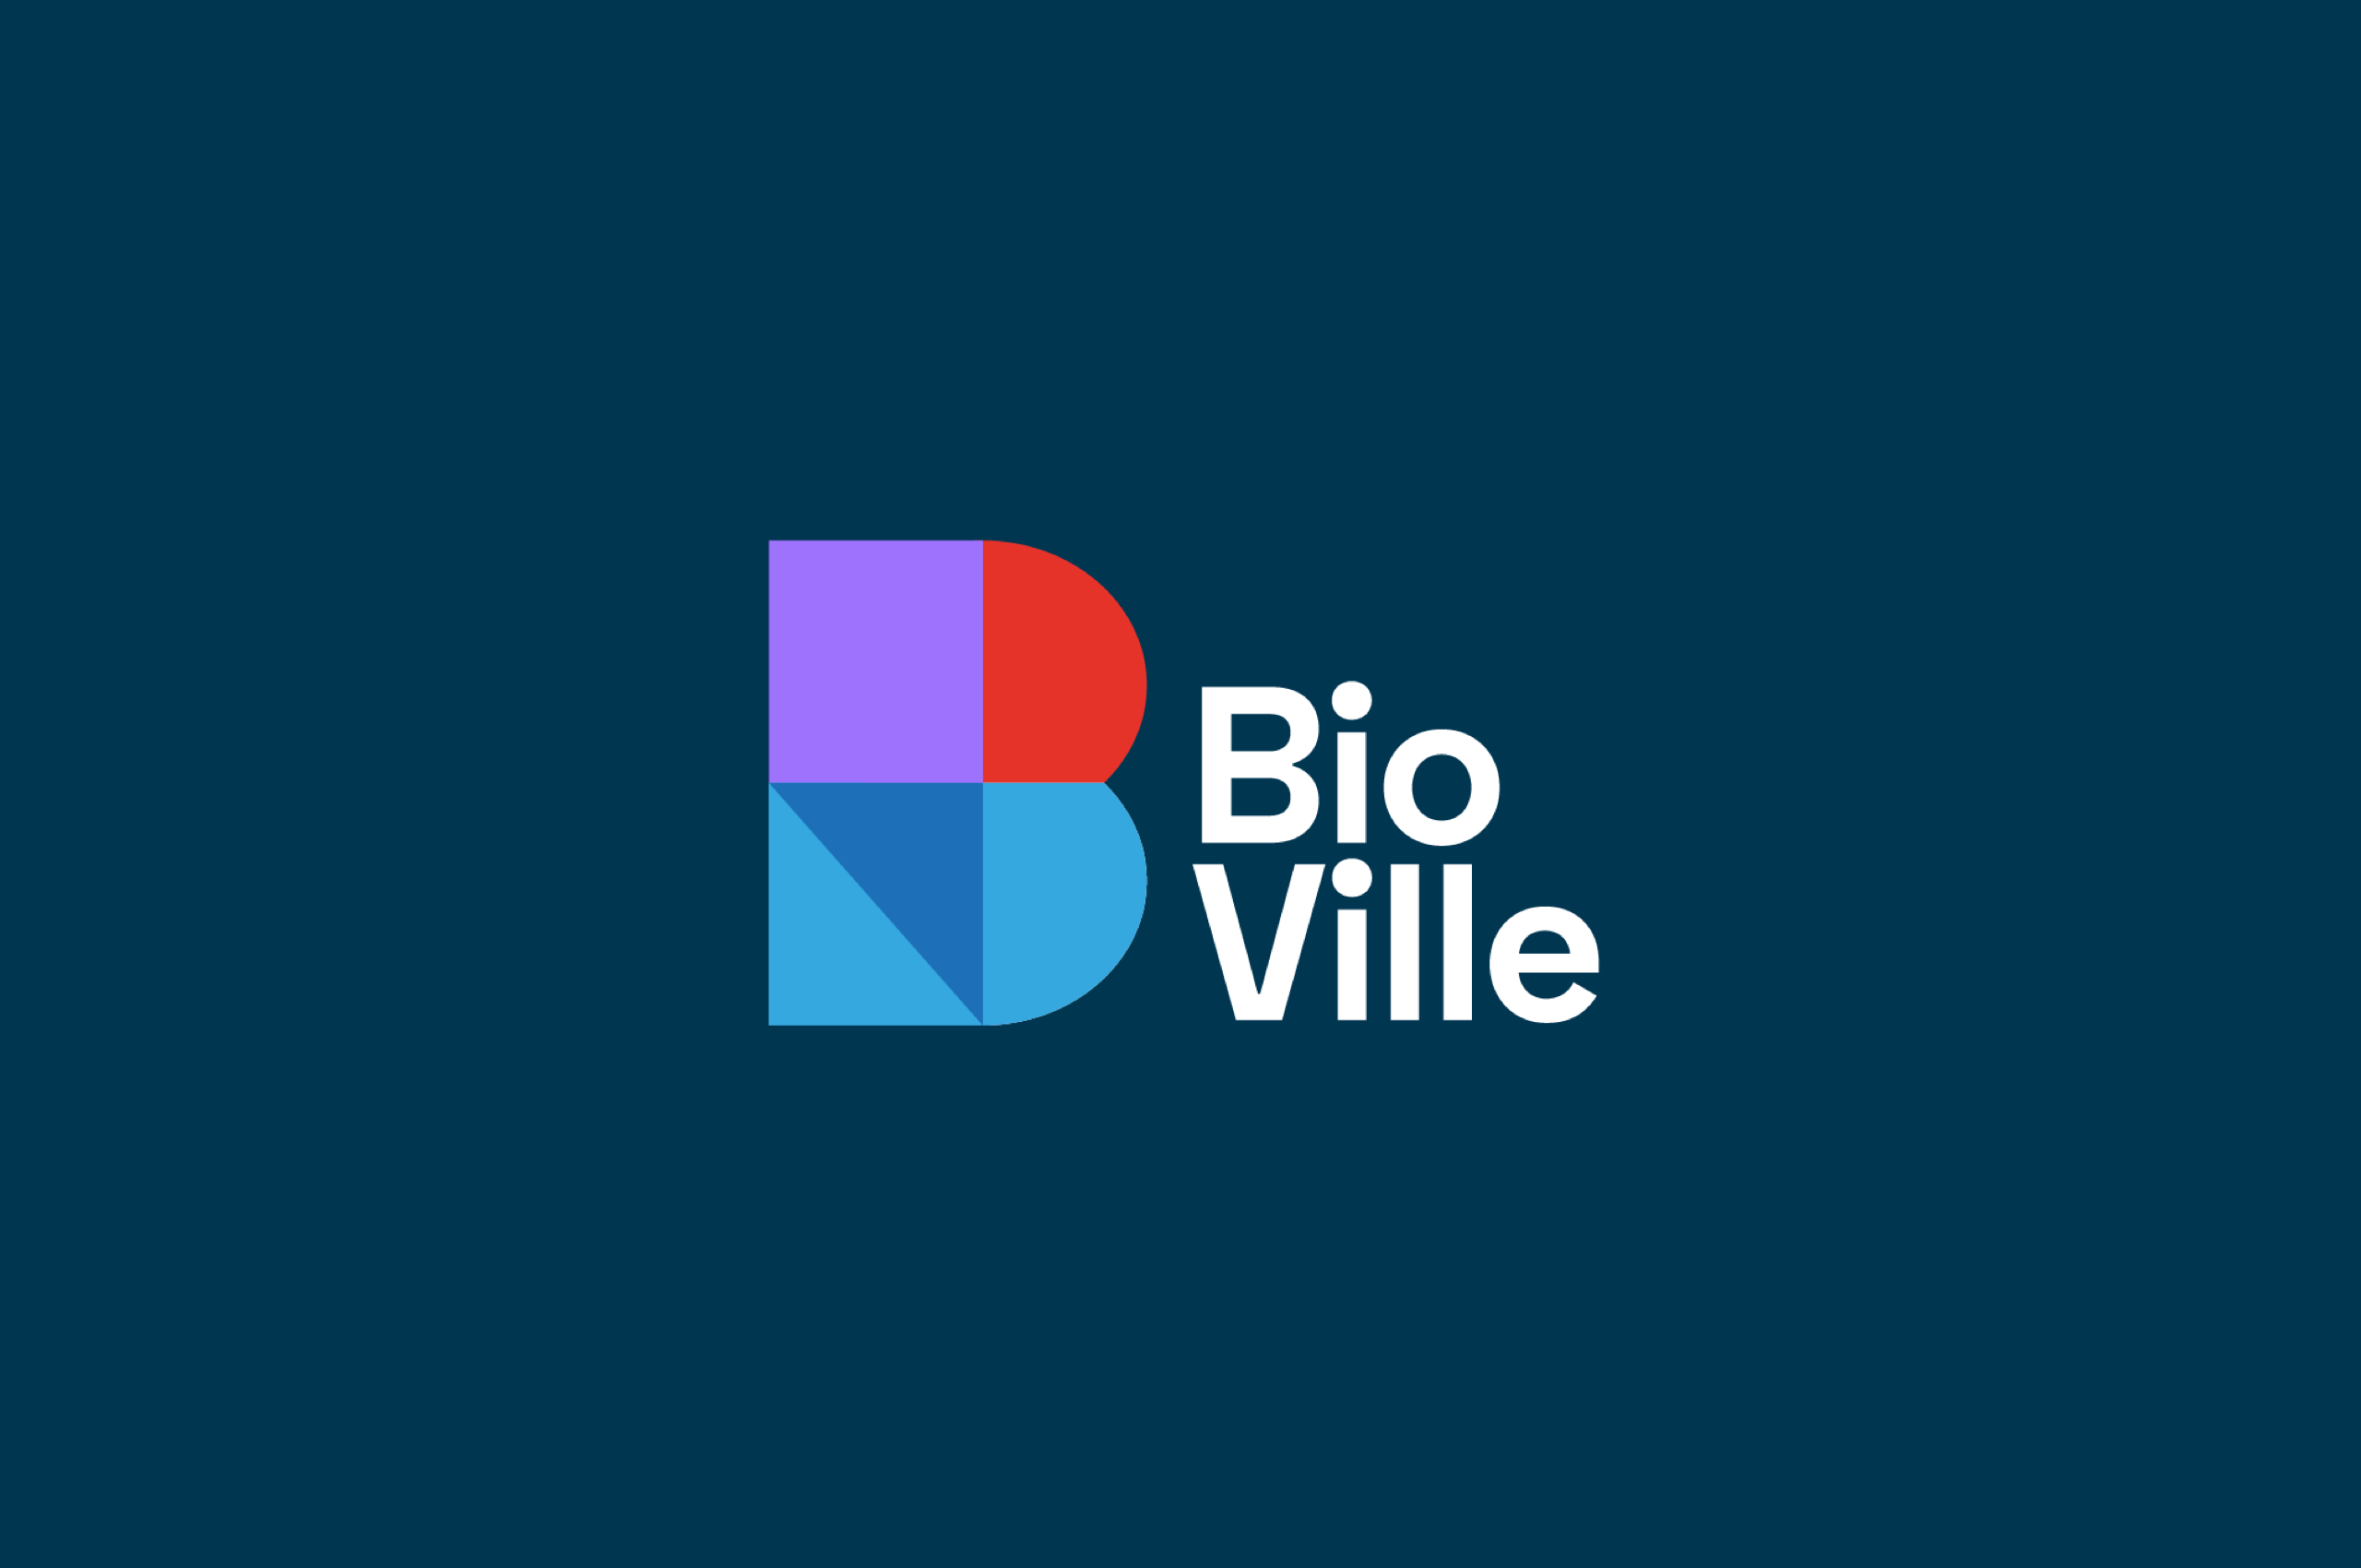 01_Bioville_LexTurner_branding